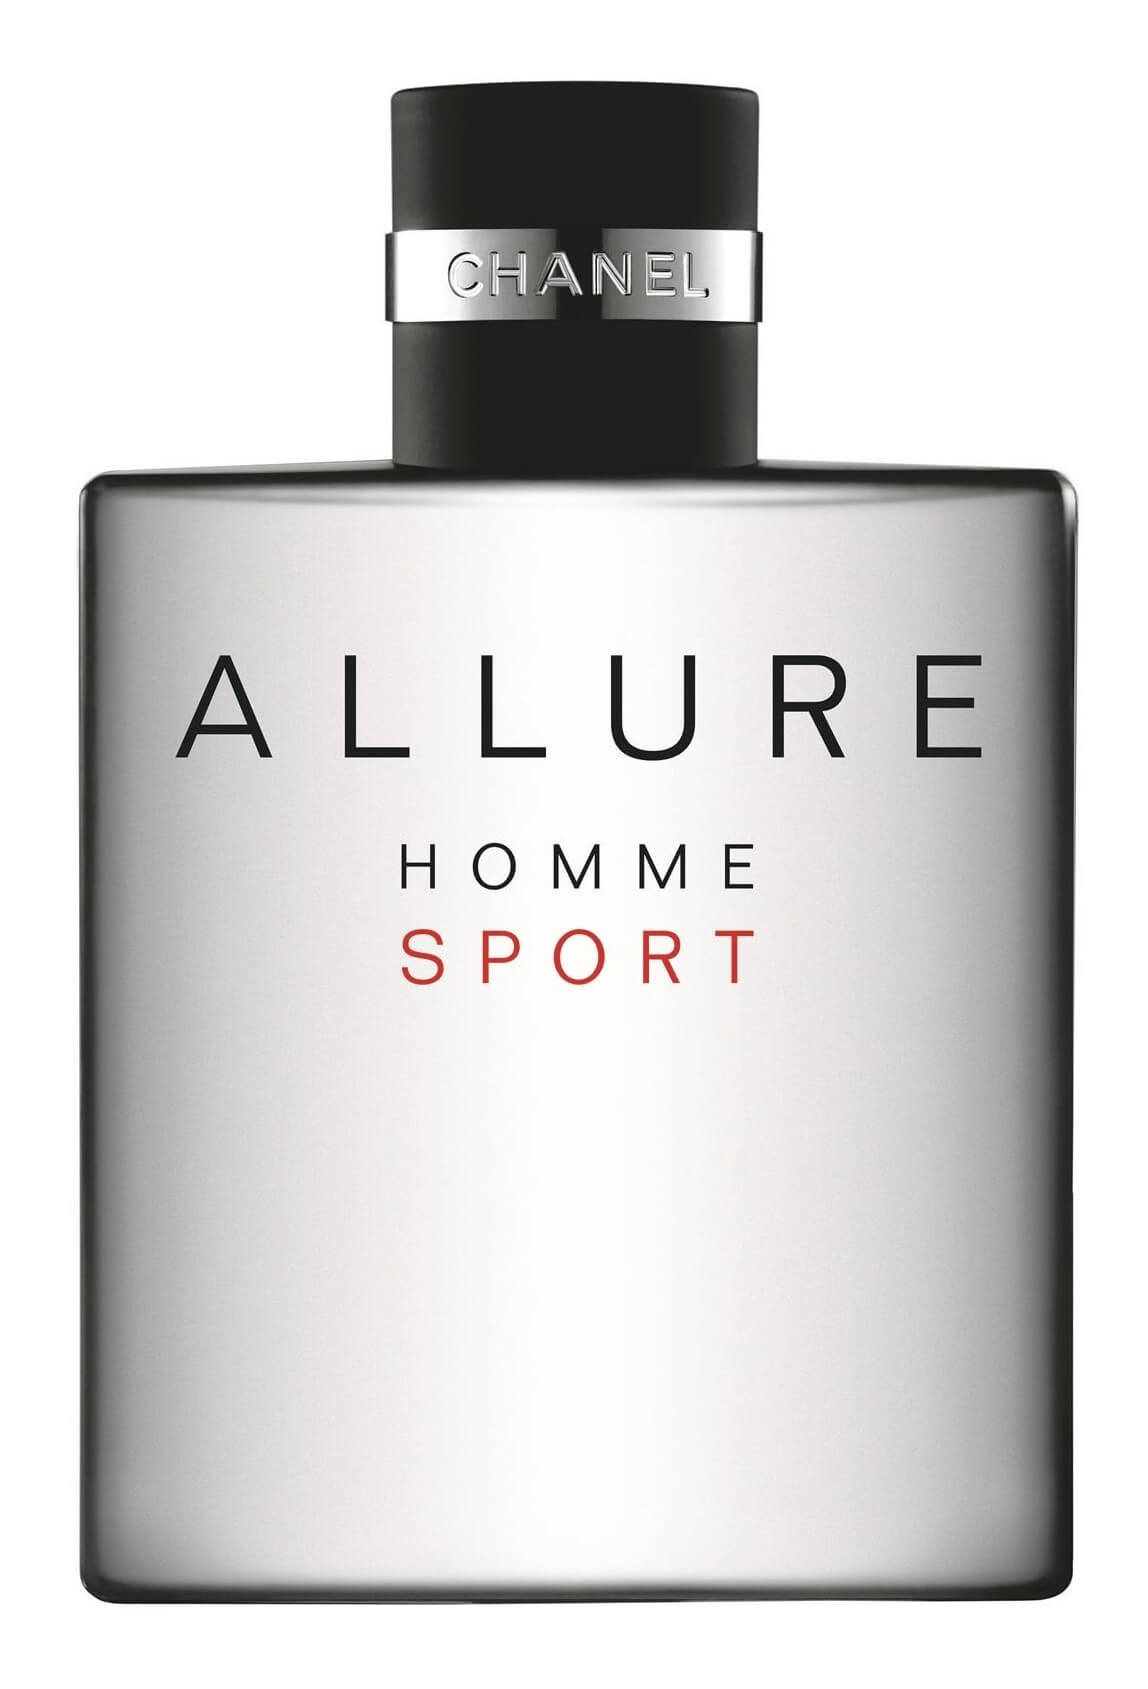 Туалетная вода хоум. Шанель Аллюр спорт 100мл. Chanel Allure homme Sport. Chanel Allure homme Sport 100ml. Chanel Allure homme Sport EDT 100 ml.